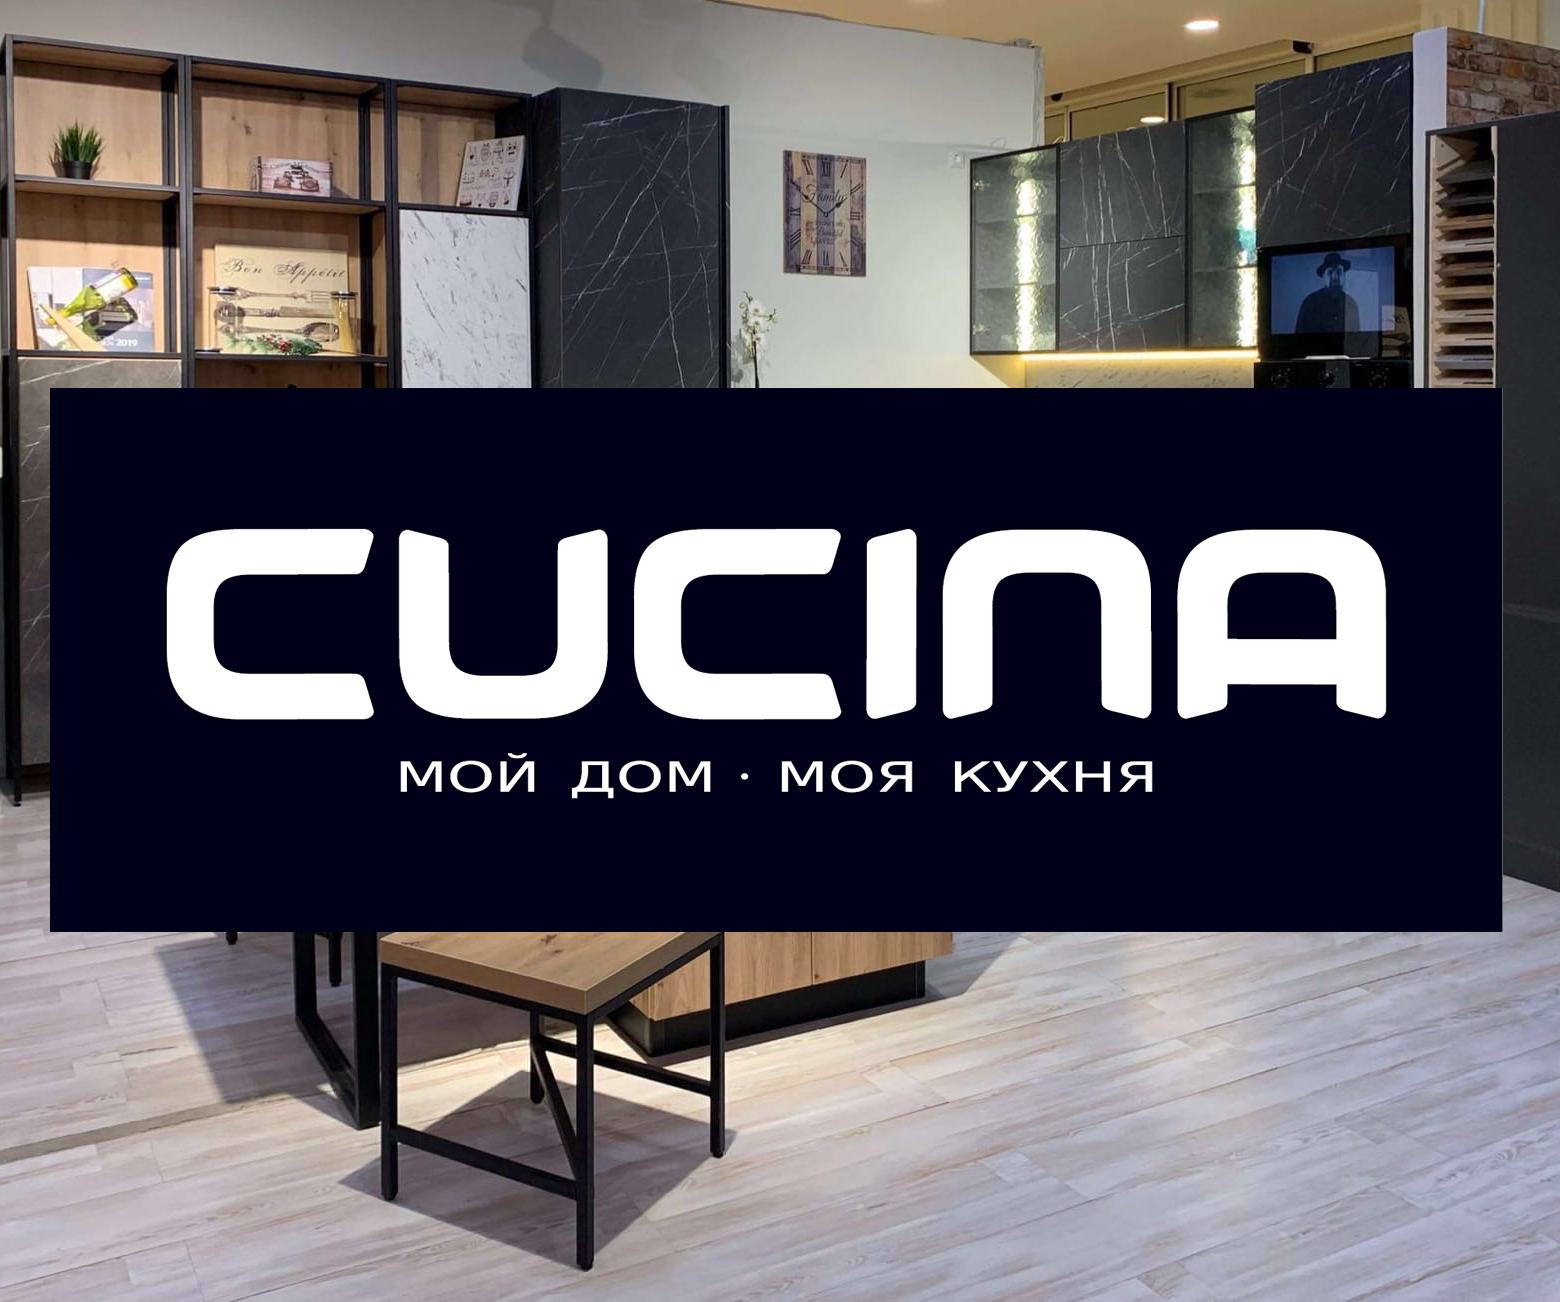 Студия кухонной мебели CUCINA